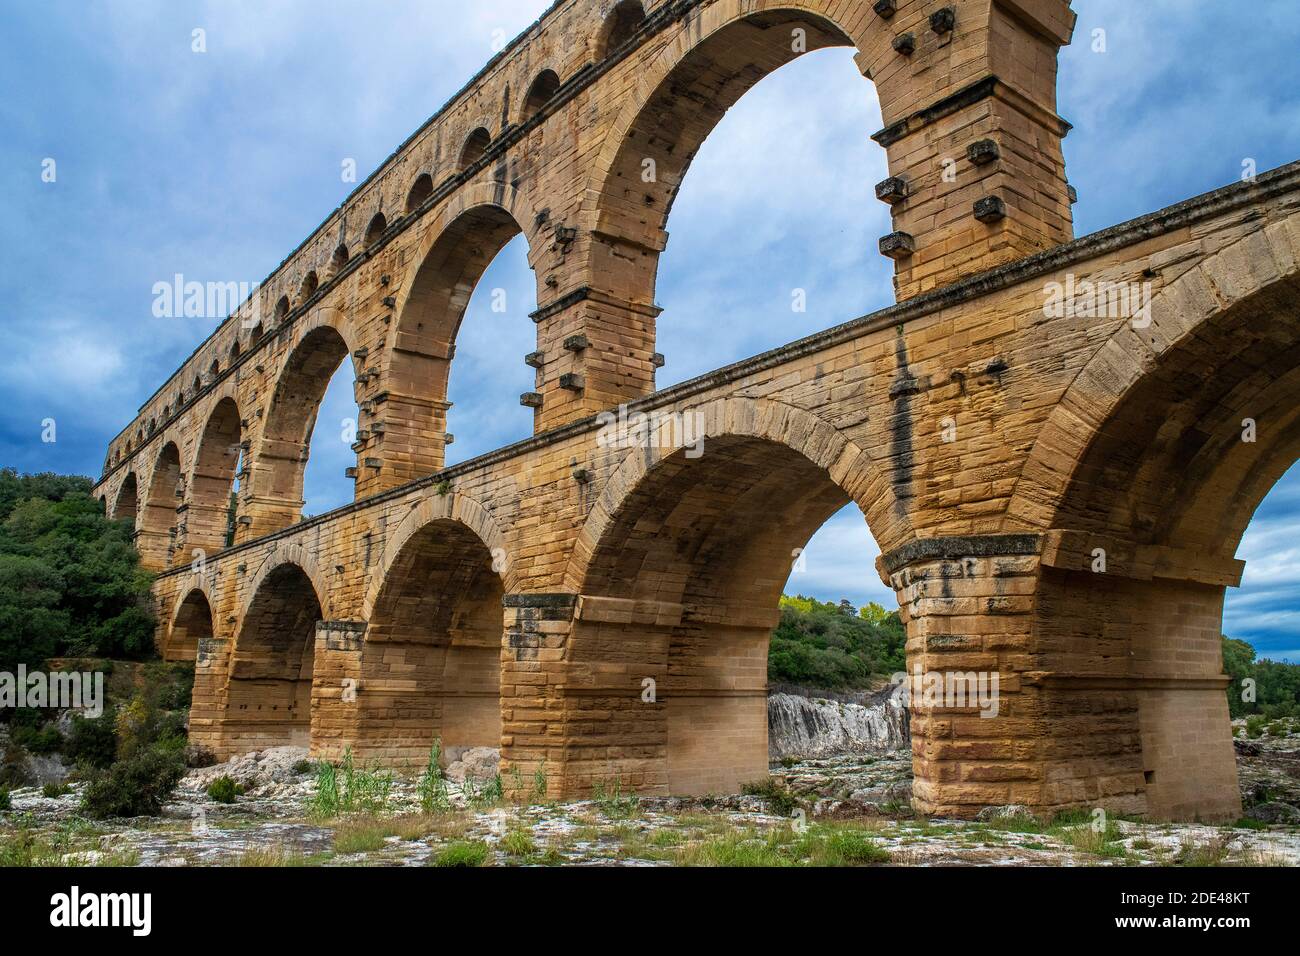 Pont du Gard, Languedoc Roussillon Region, Frankreich, UNESCO-Weltkulturerbe. Das römische Aquädukt überquert den Fluss Gardon bei der Nähe von Vers-Pon-du-Gard Languedo Stockfoto